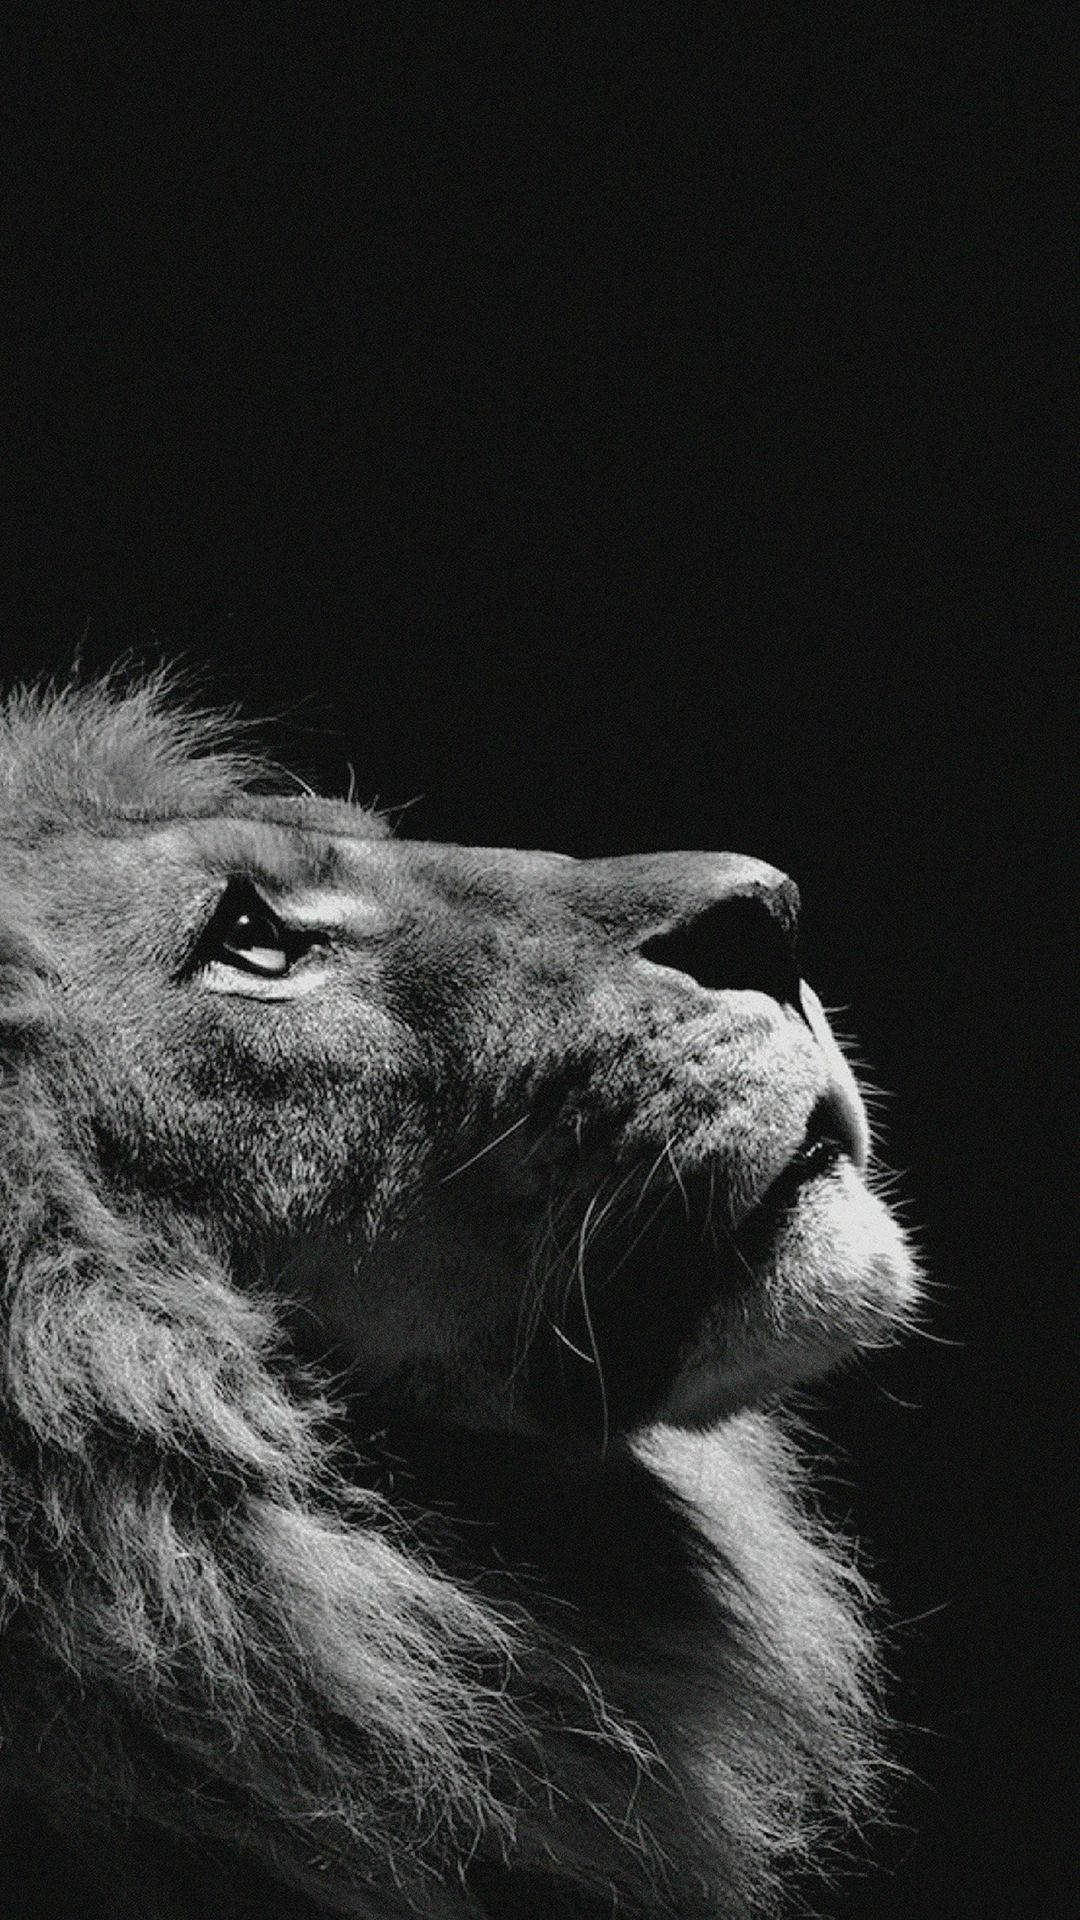 Black & white lion portrait Iphone wallpaper